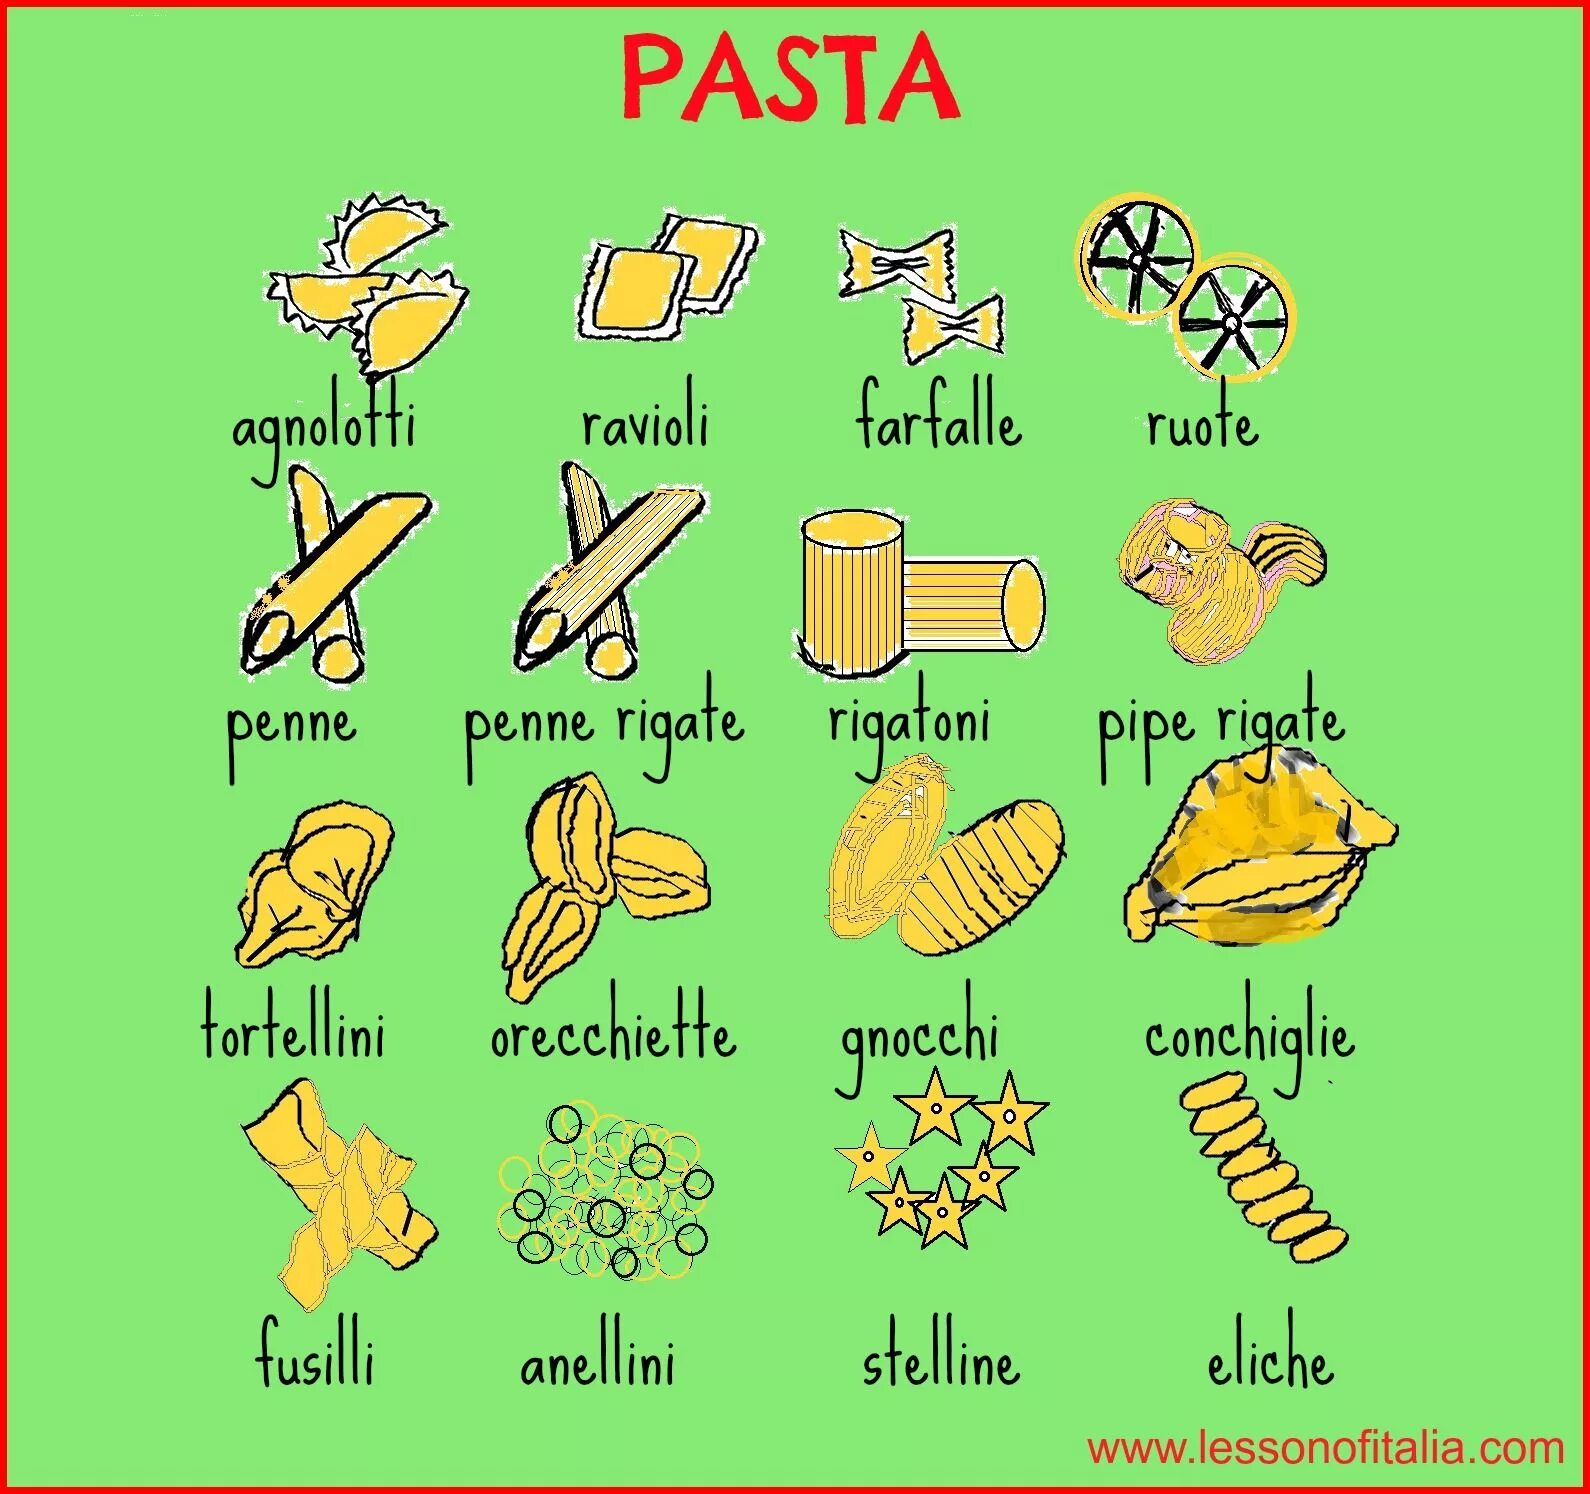 Тесто на итальянском языке. Еда на итальянском языке. Продукты на итальянском языке. Итальянский в картинках для изучения. Итальянские слова.